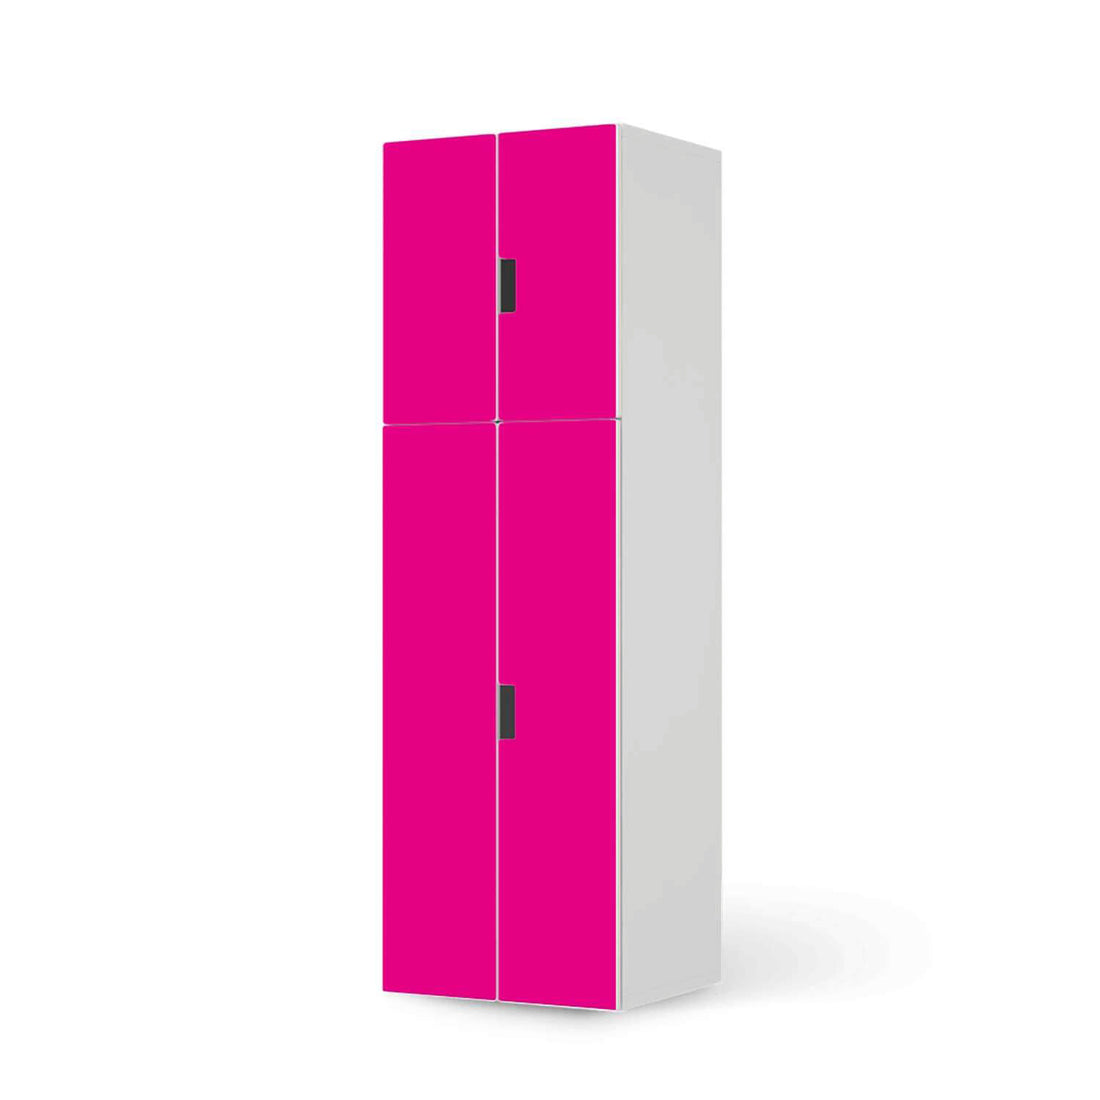 Selbstklebende Folie Pink Dark - IKEA Stuva kombiniert - 2 große Türen und 2 kleine Türen (Kombination 2)  - weiss